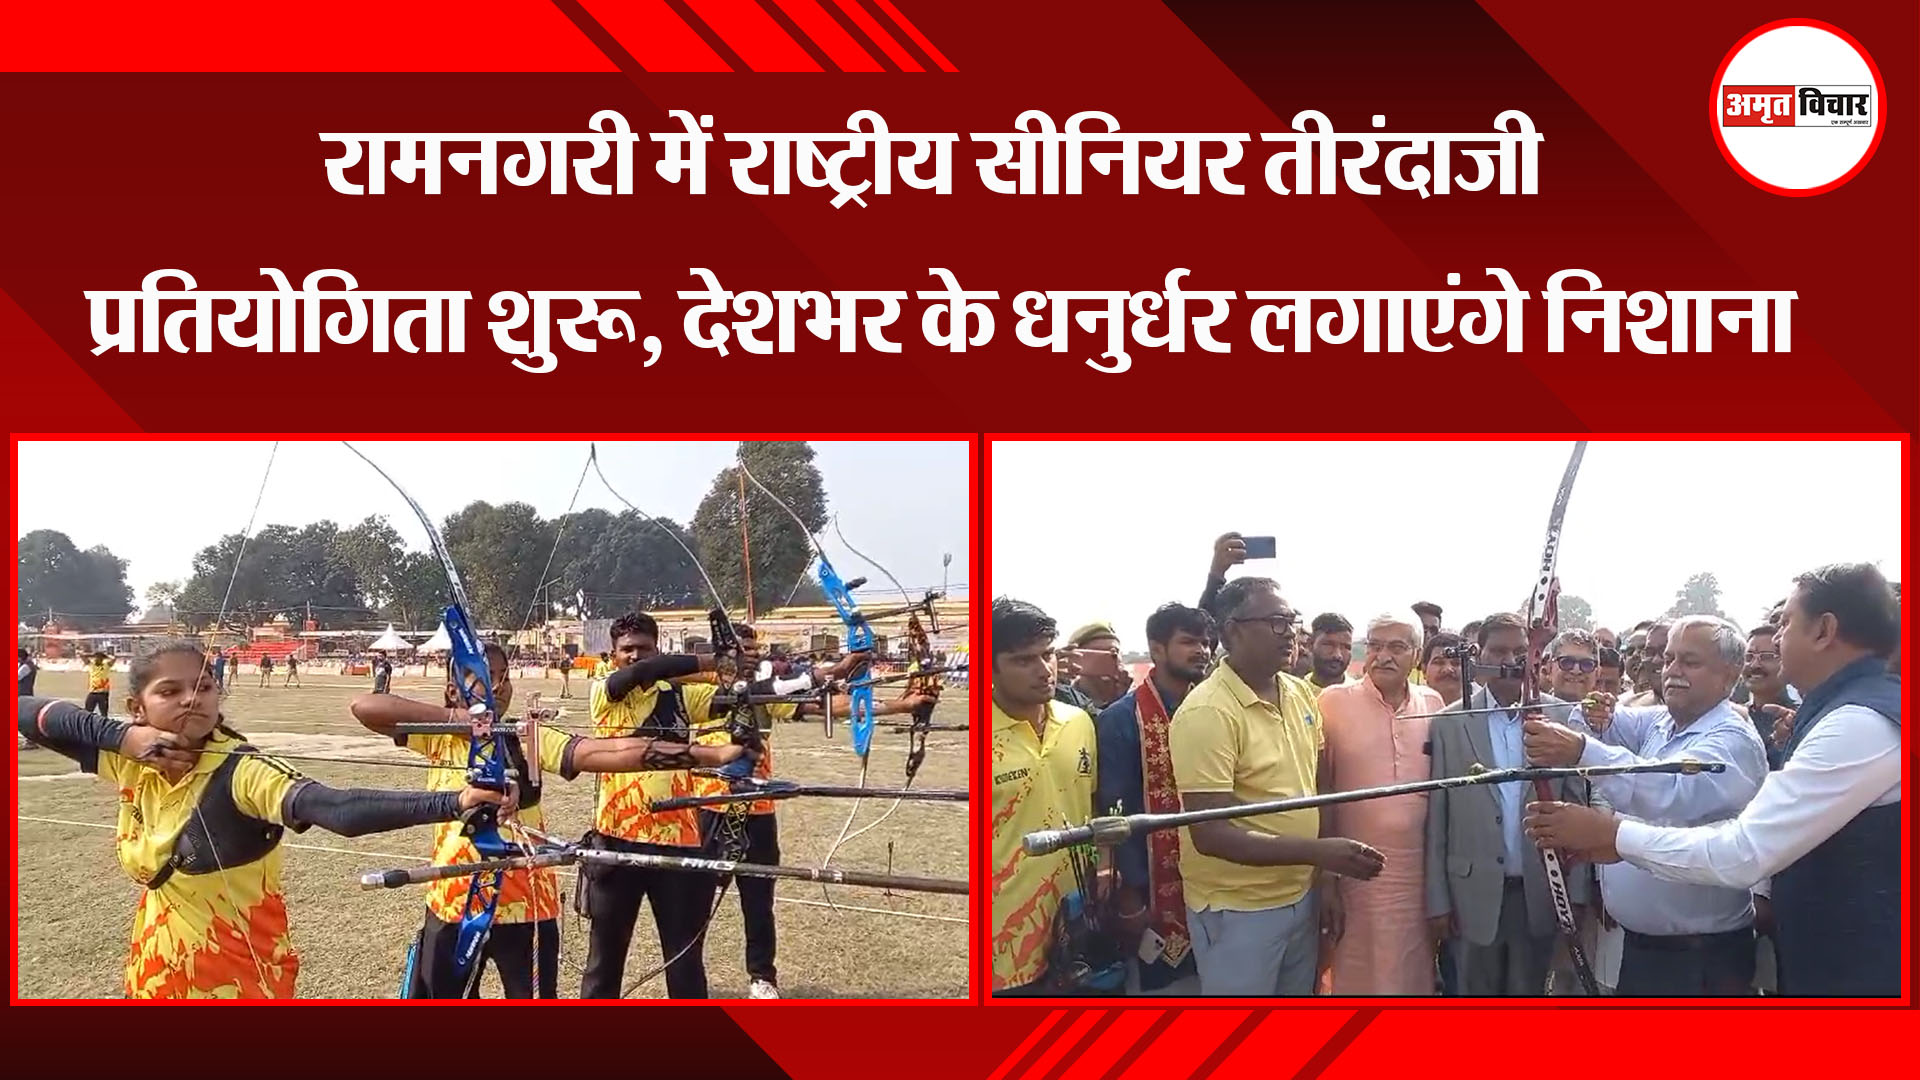 अयोध्या: रामनगरी में राष्ट्रीय सीनियर तीरंदाजी प्रतियोगिता शुरू, देशभर के धनुर्धर लगाएंगे निशाना